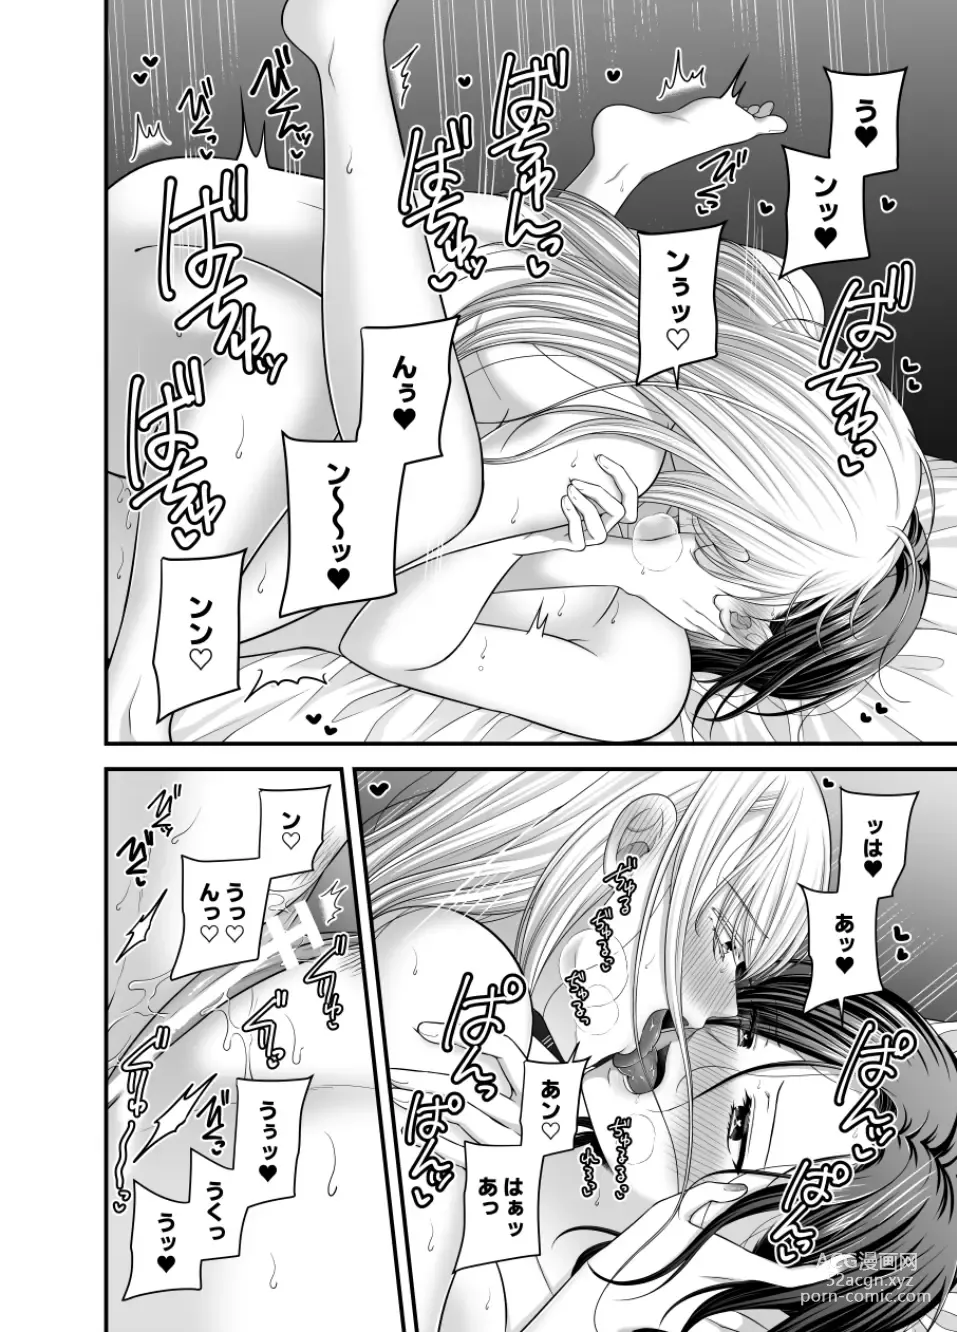 Page 1154 of doujinshi Aishite Ii no wa, Karada dake